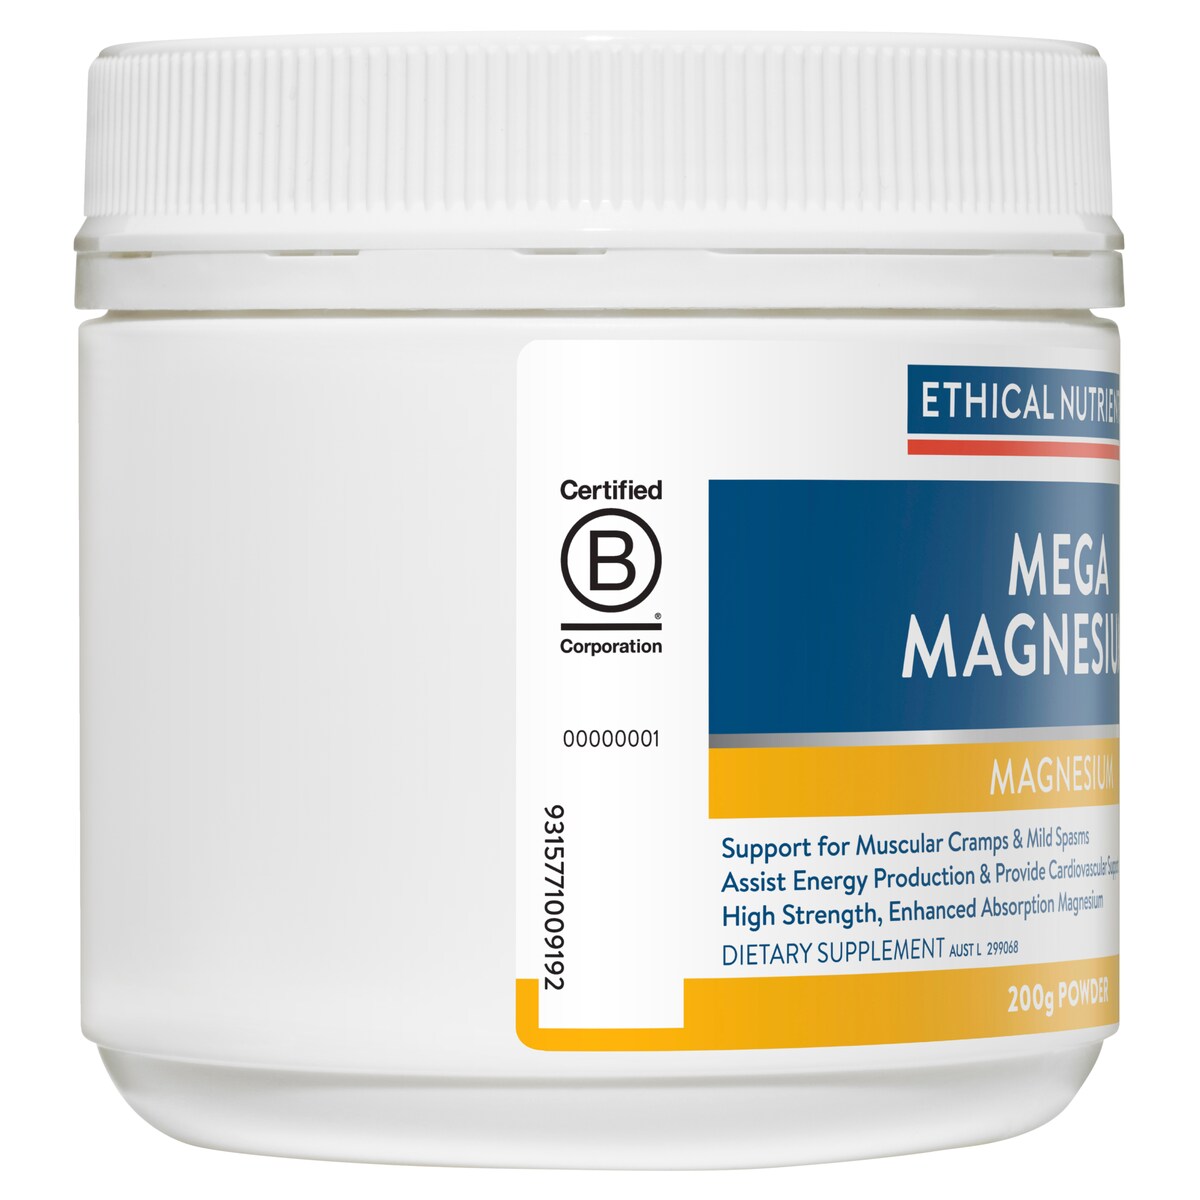 Ethical Nutrients Mega Magnesium Citrus 200G Powder